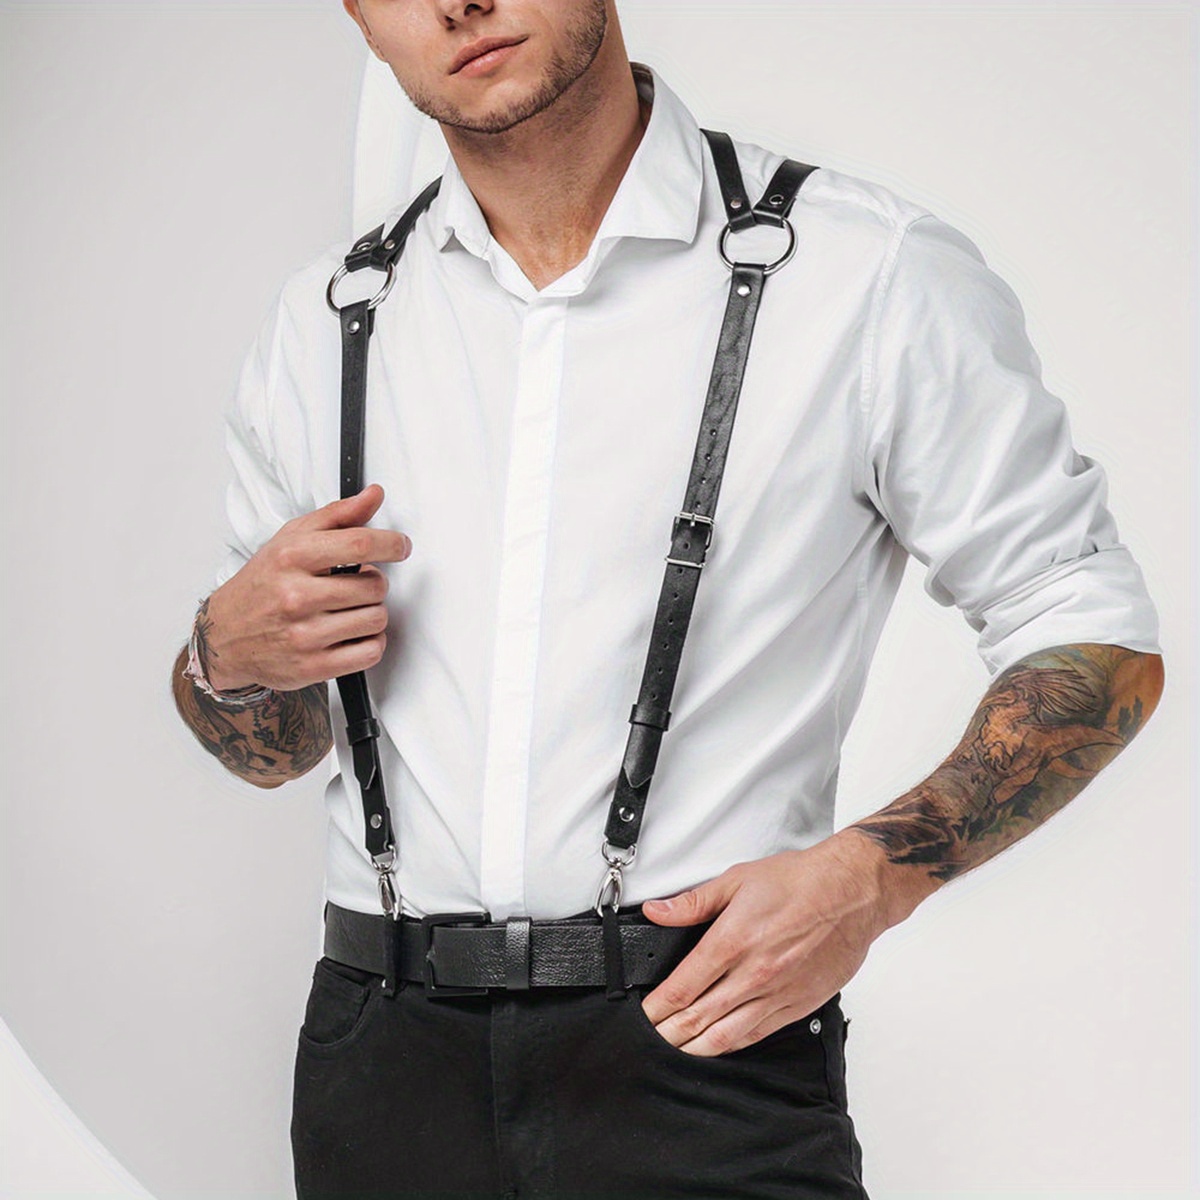 Men Suspenders Heavy Duty Back Belt Adults Adjustable Pants Brace for  School Choir